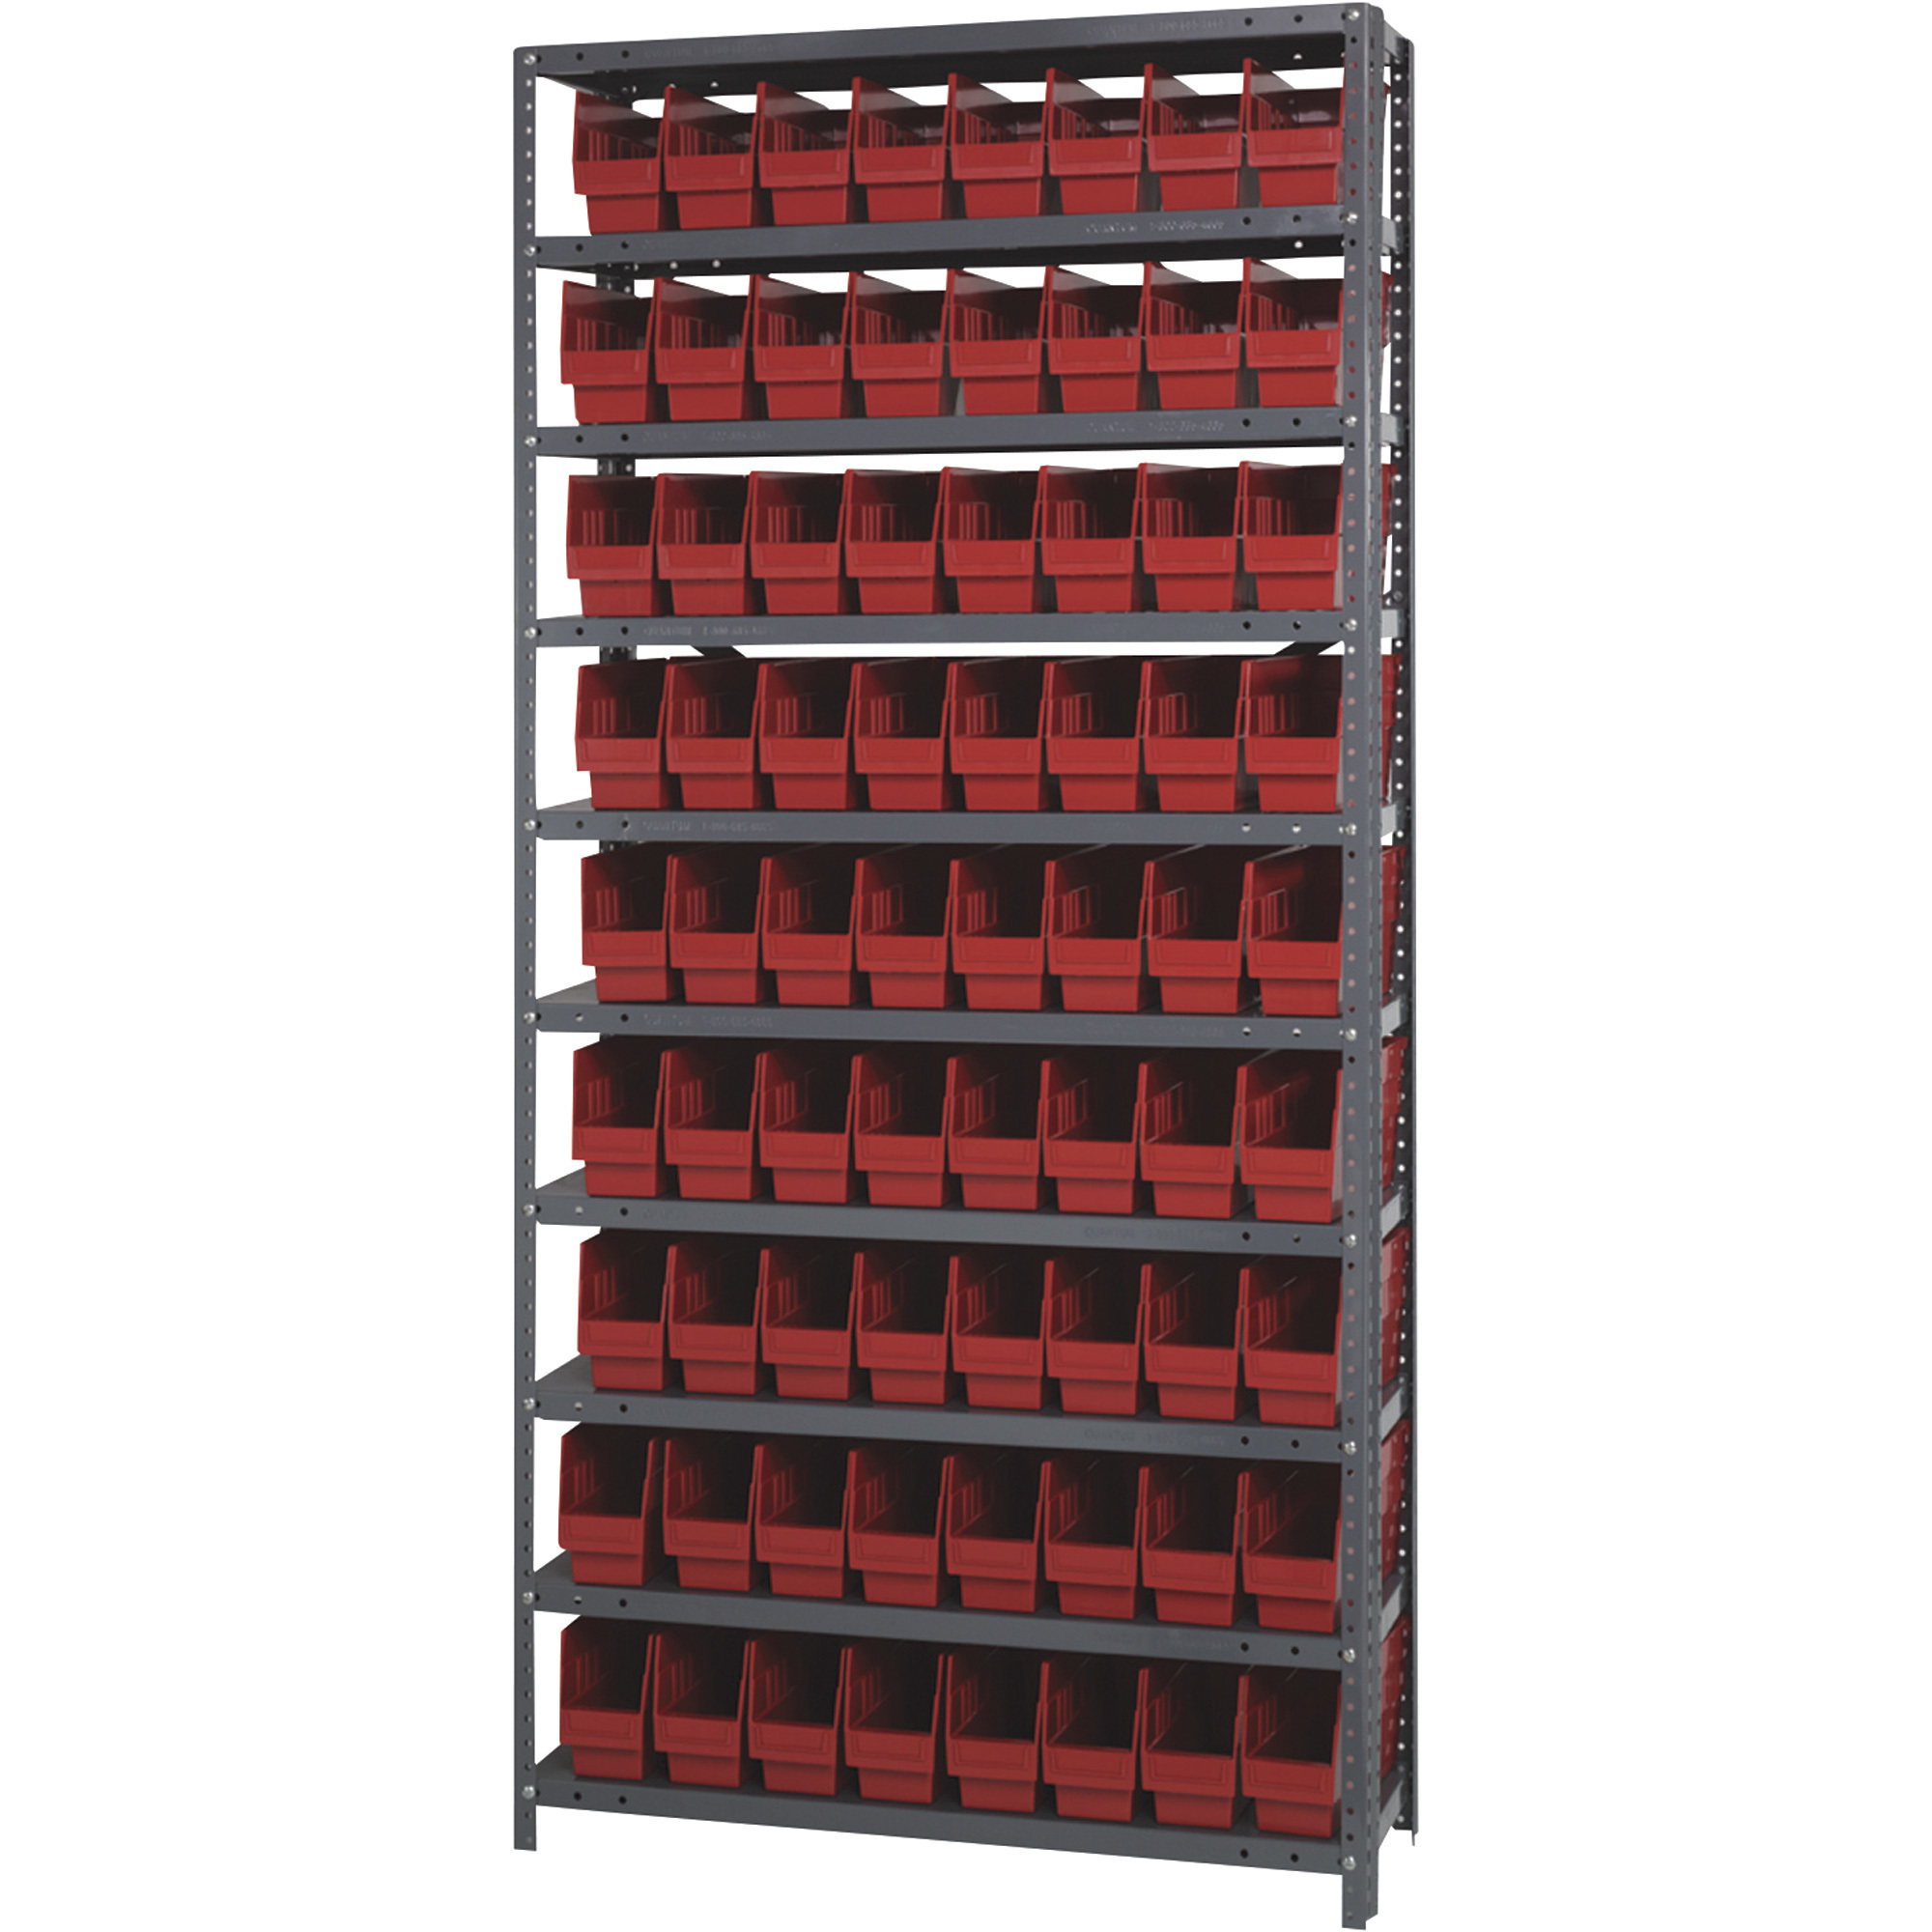 Quantum Storage Economy Shelf Storage Units with Bins, Red